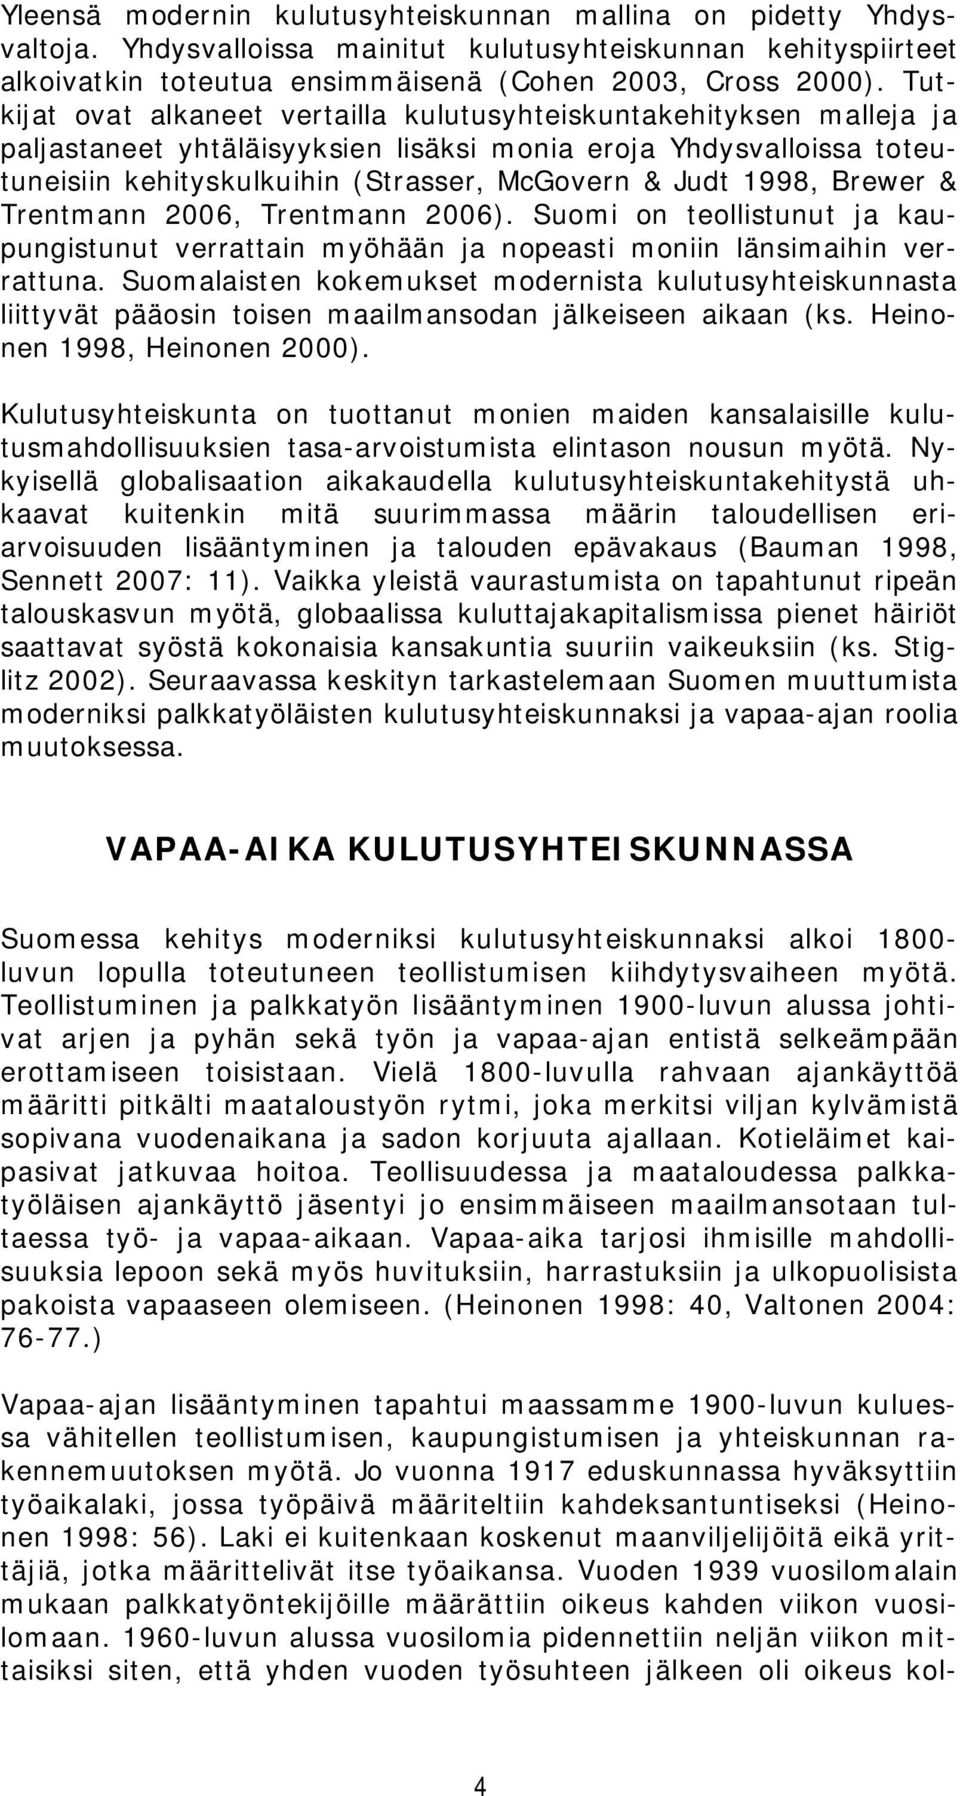 1998, Brewer & Trentmann 2006, Trentmann 2006). Suomi on teollistunut ja kaupungistunut verrattain myöhään ja nopeasti moniin länsimaihin verrattuna.